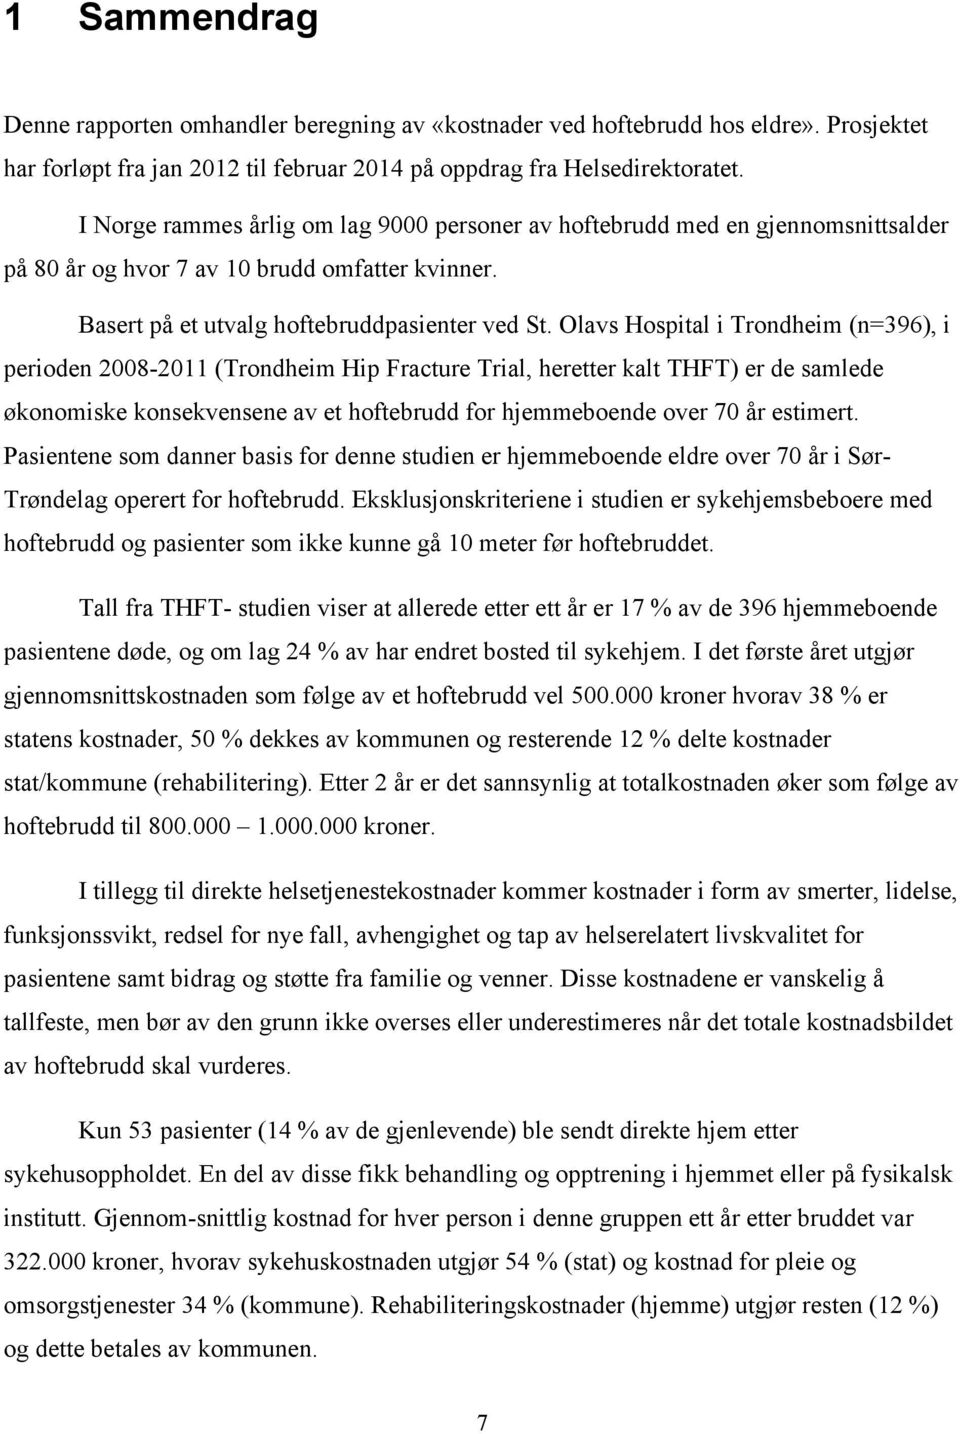 Olavs Hospital i Trondheim (n=396), i perioden 2008-2011 (Trondheim Hip Fracture Trial, heretter kalt THFT) er de samlede økonomiske konsekvensene av et hoftebrudd for hjemmeboende over 70 år